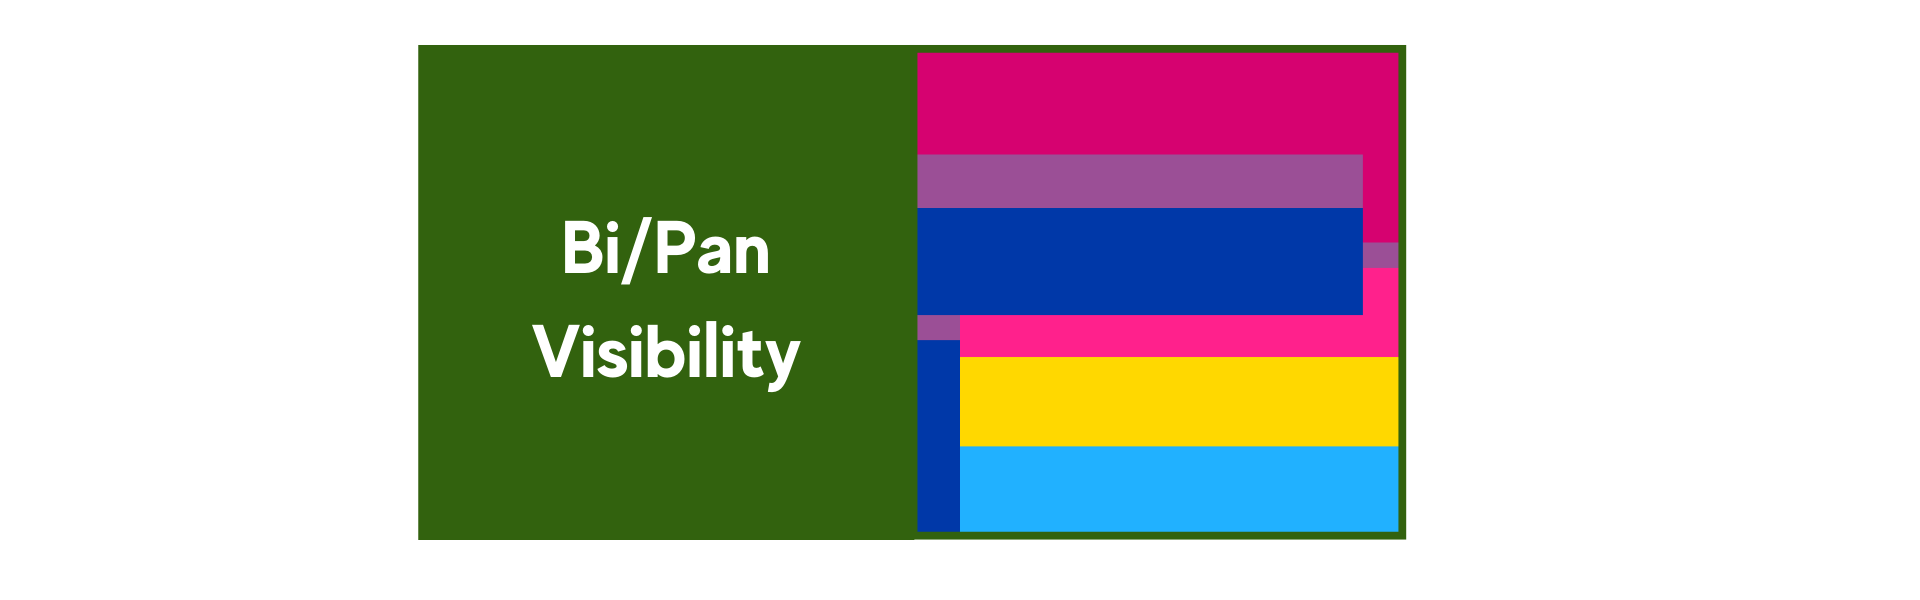 Bi_Pan-Visibility.png